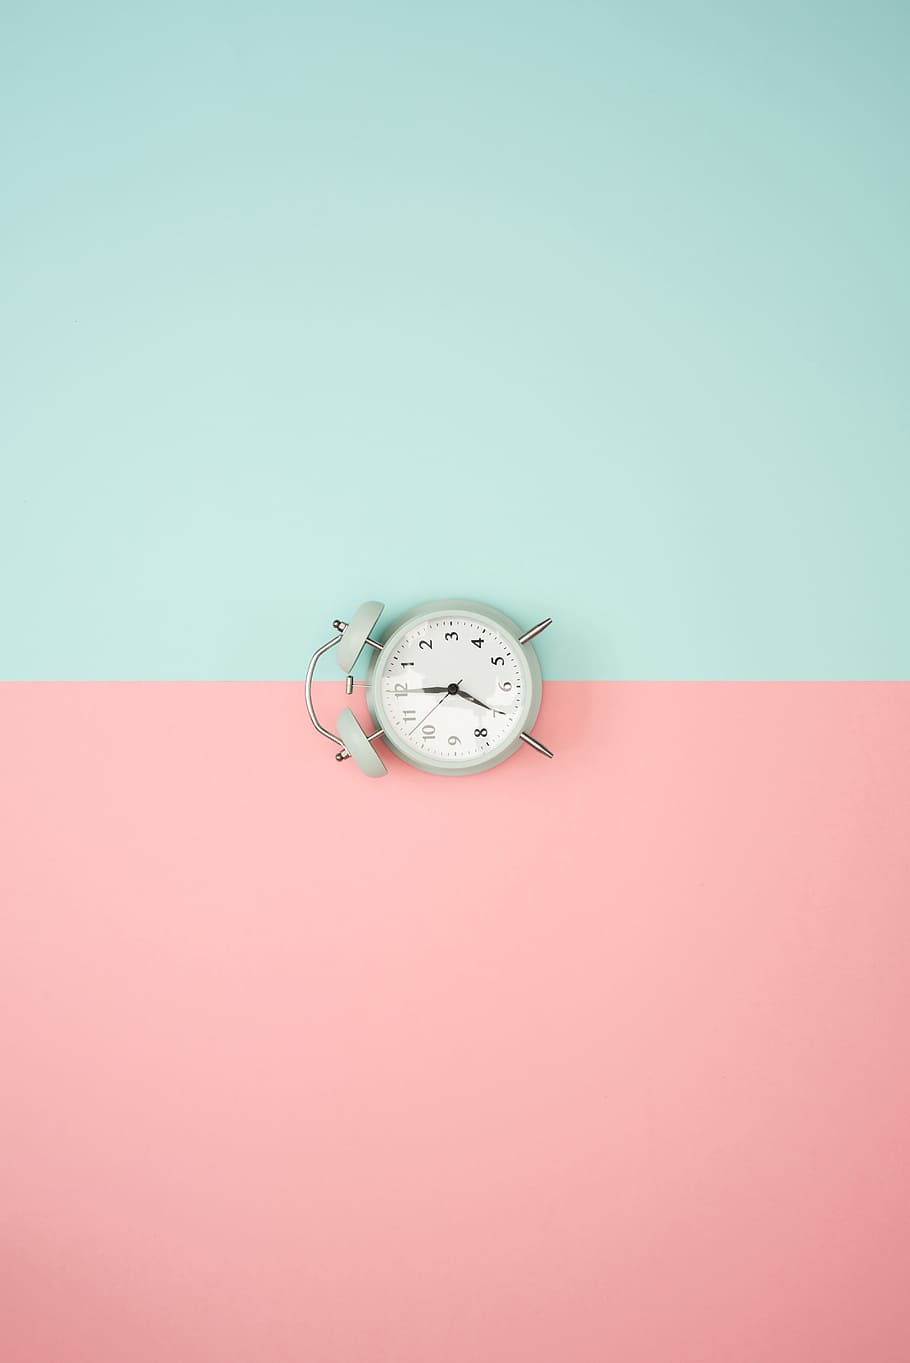 reloj, fondo pastel, azul, rosa, hora, alarma, colorido, fondo de color, tiempo, foto de estudio